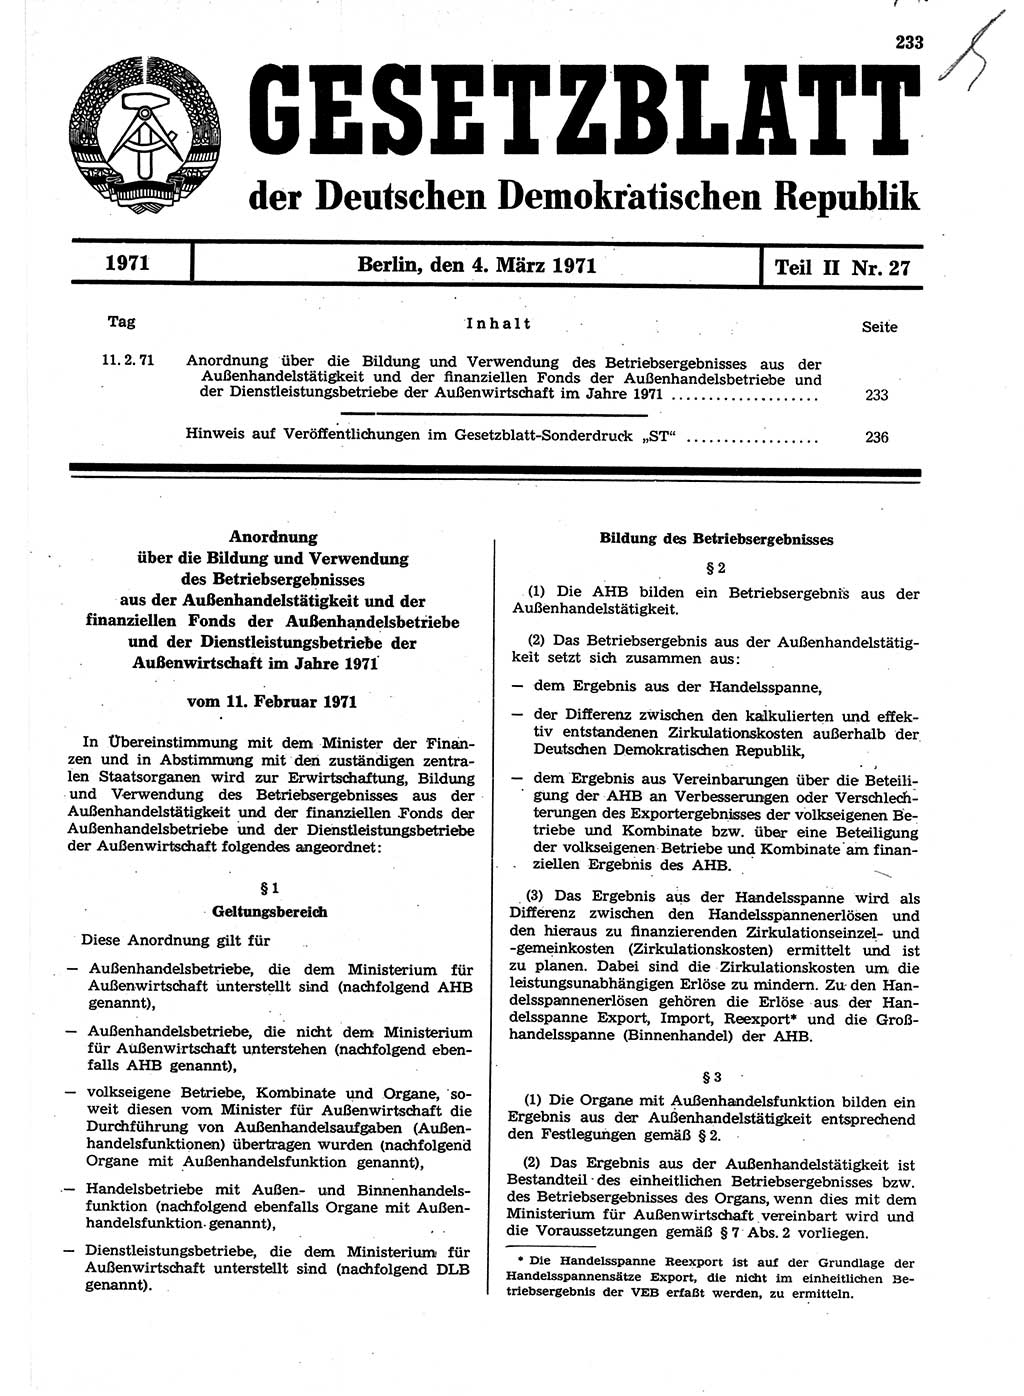 Gesetzblatt (GBl.) der Deutschen Demokratischen Republik (DDR) Teil ⅠⅠ 1971, Seite 233 (GBl. DDR ⅠⅠ 1971, S. 233)